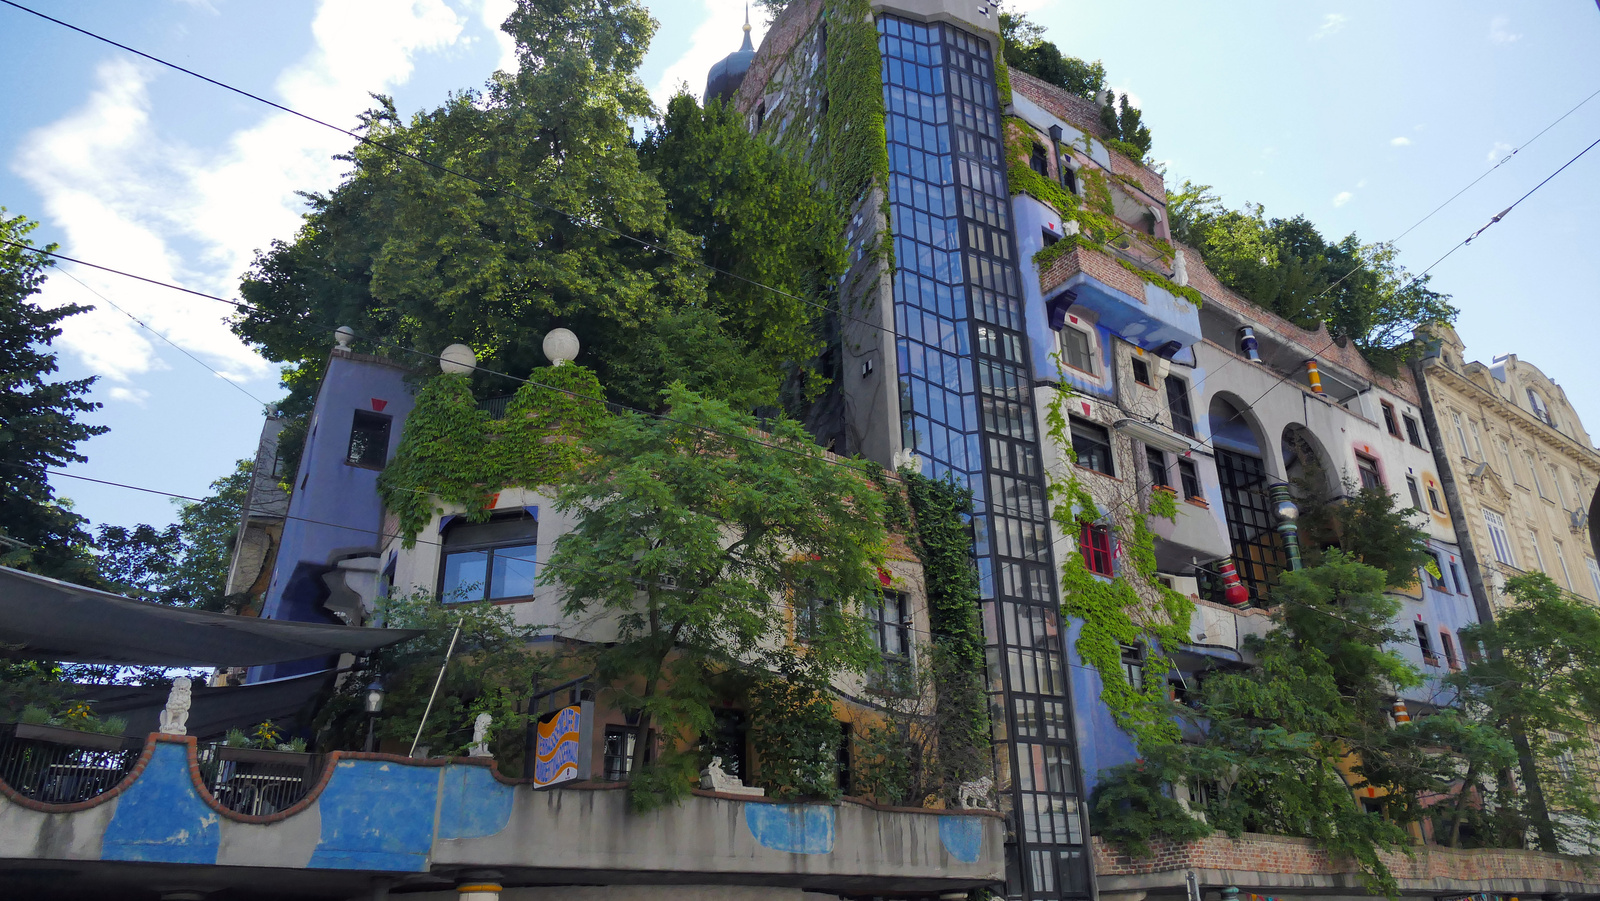 Bécs - Hundertwasser house